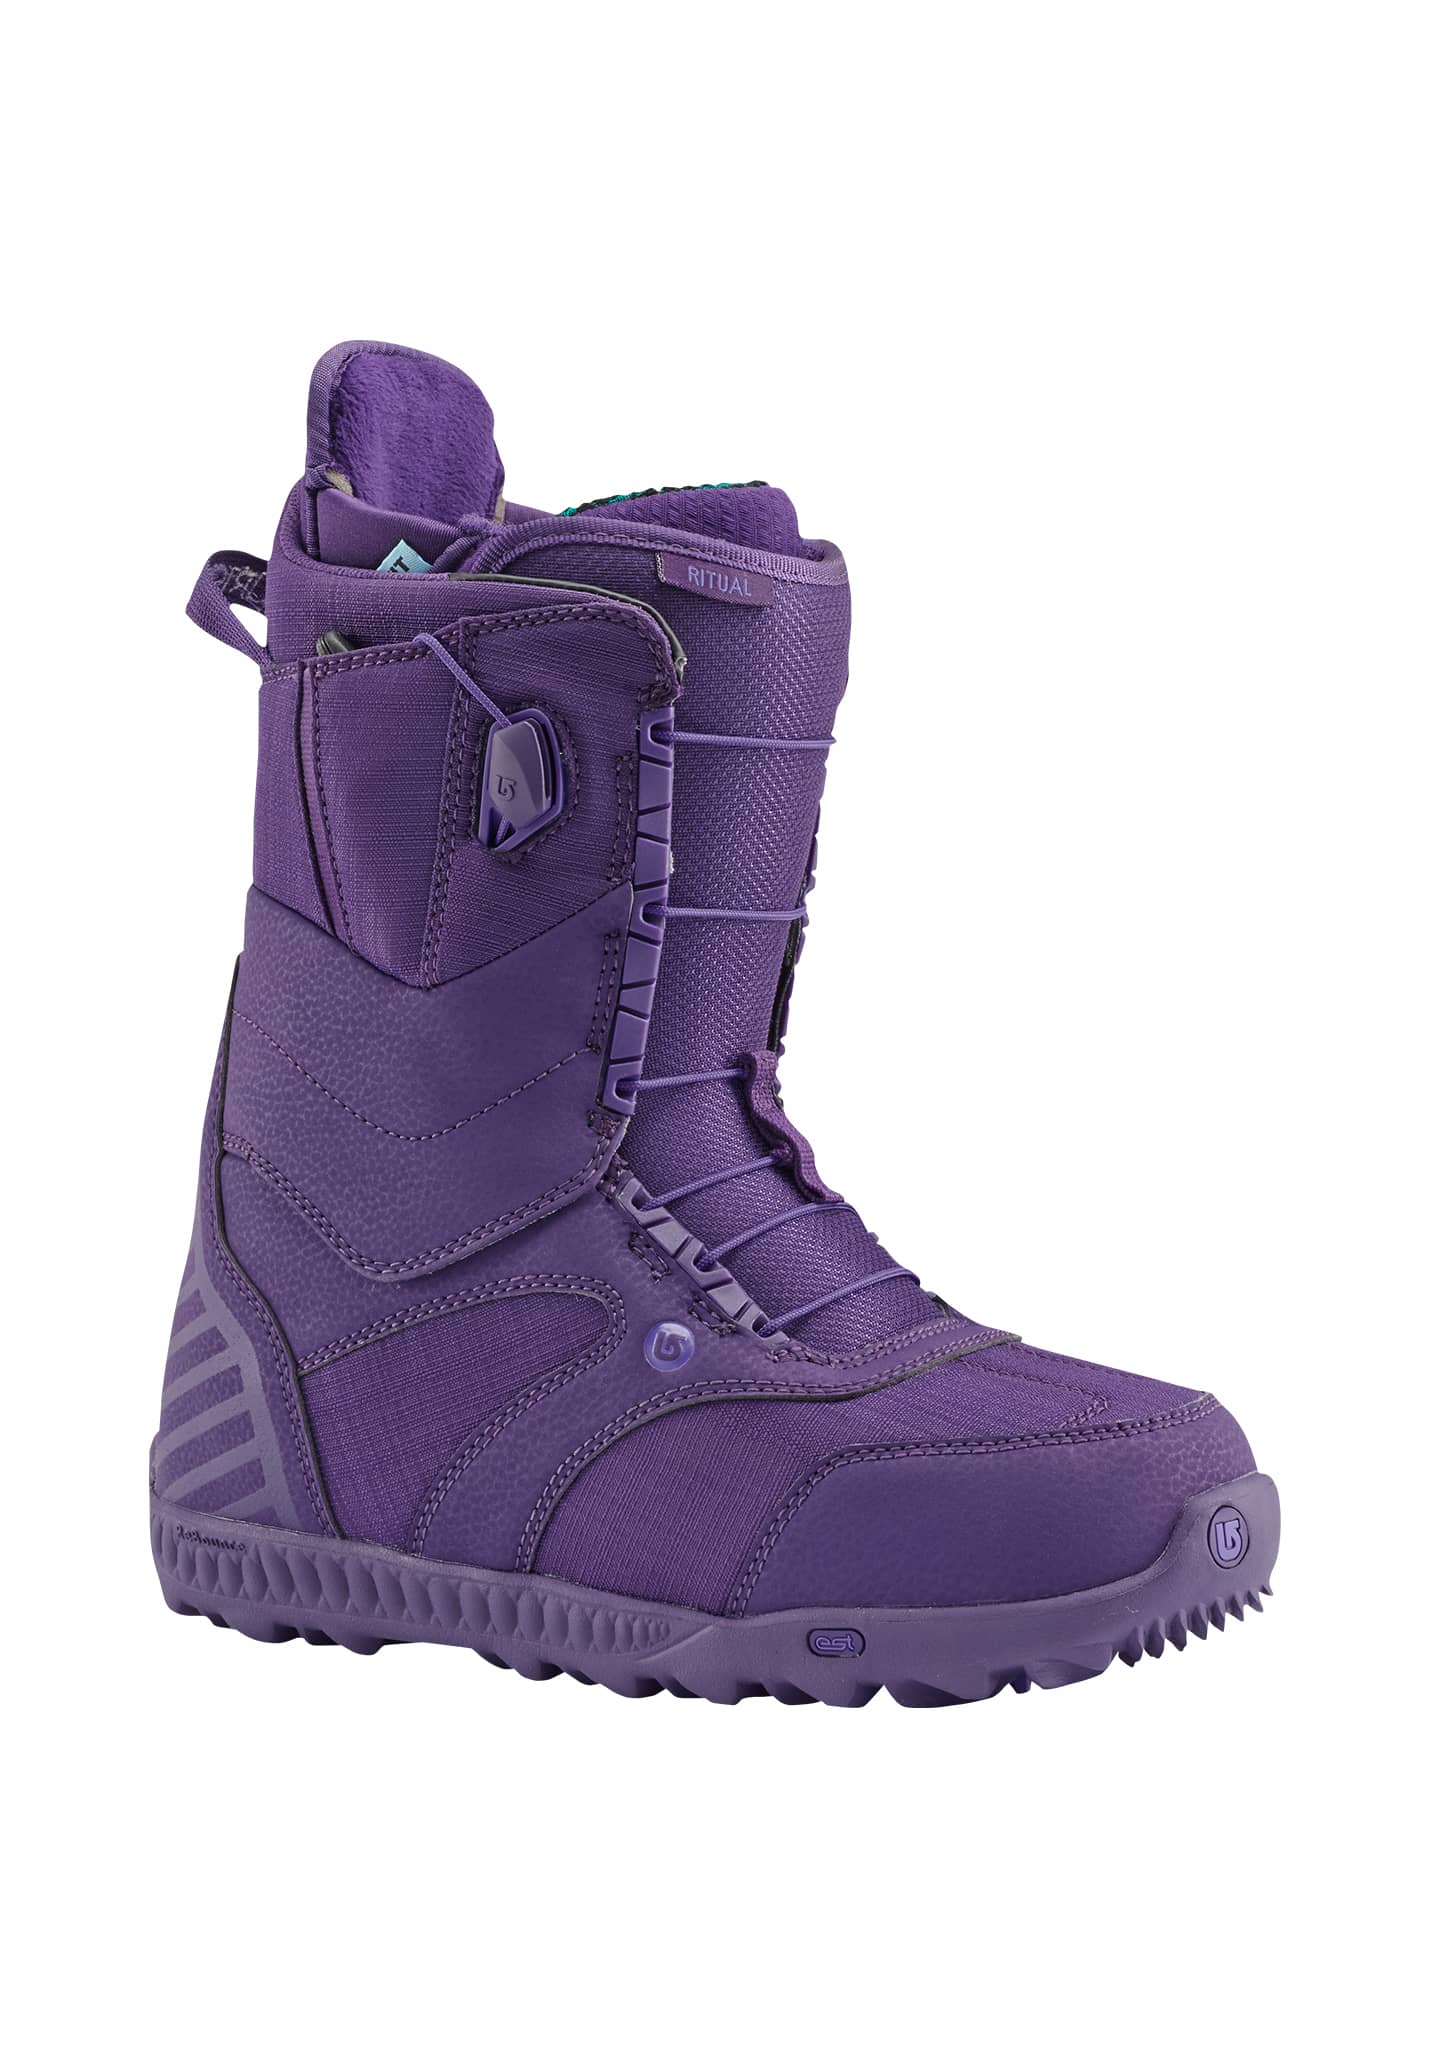 Burton Ritual Snowboard Boots feelgood purple 41,5